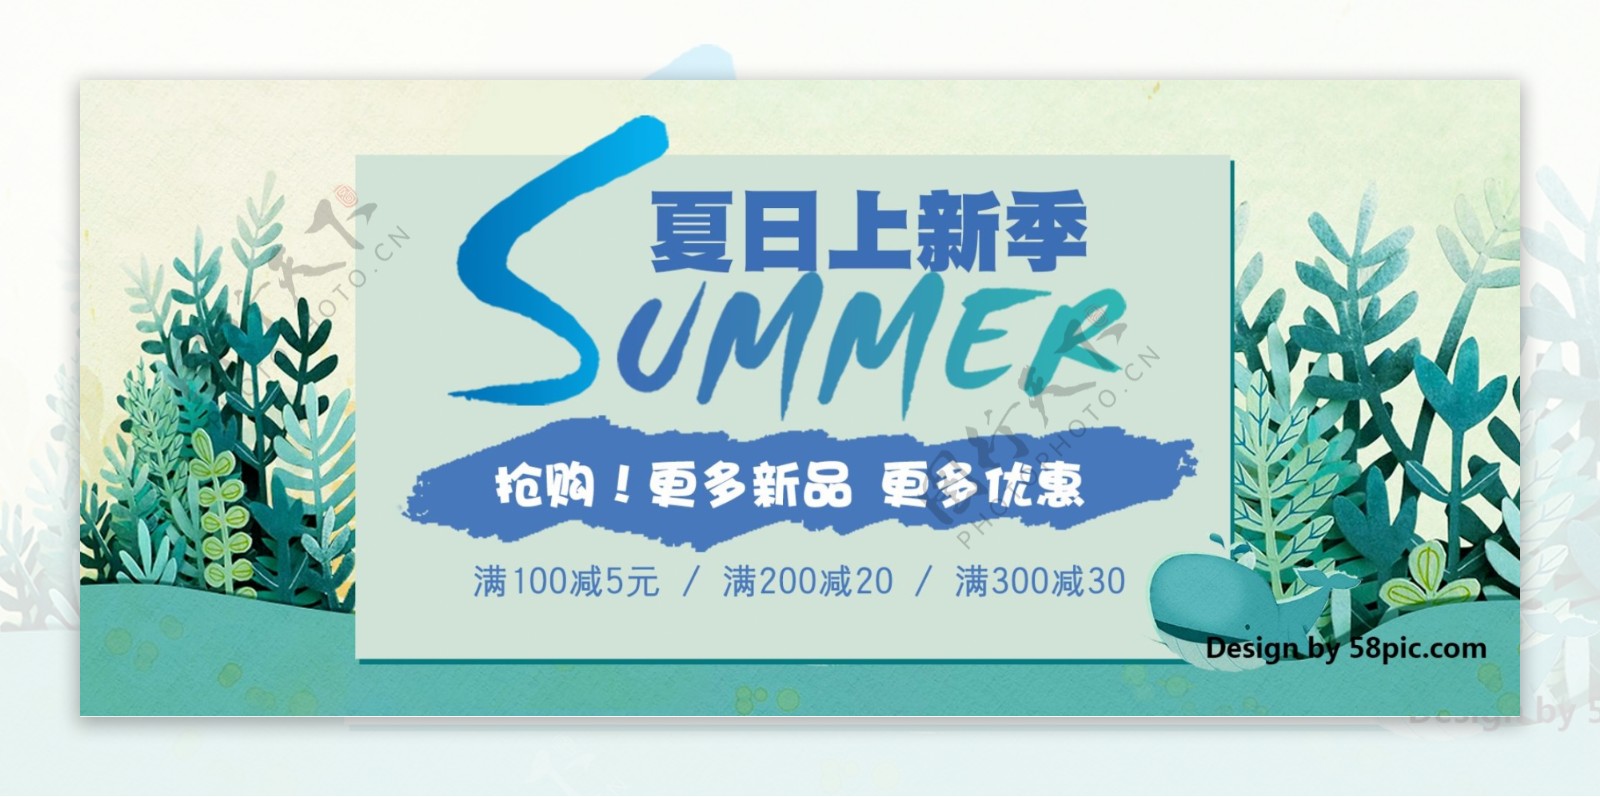 淘宝天猫夏季夏日清凉节上新季促销海报banner